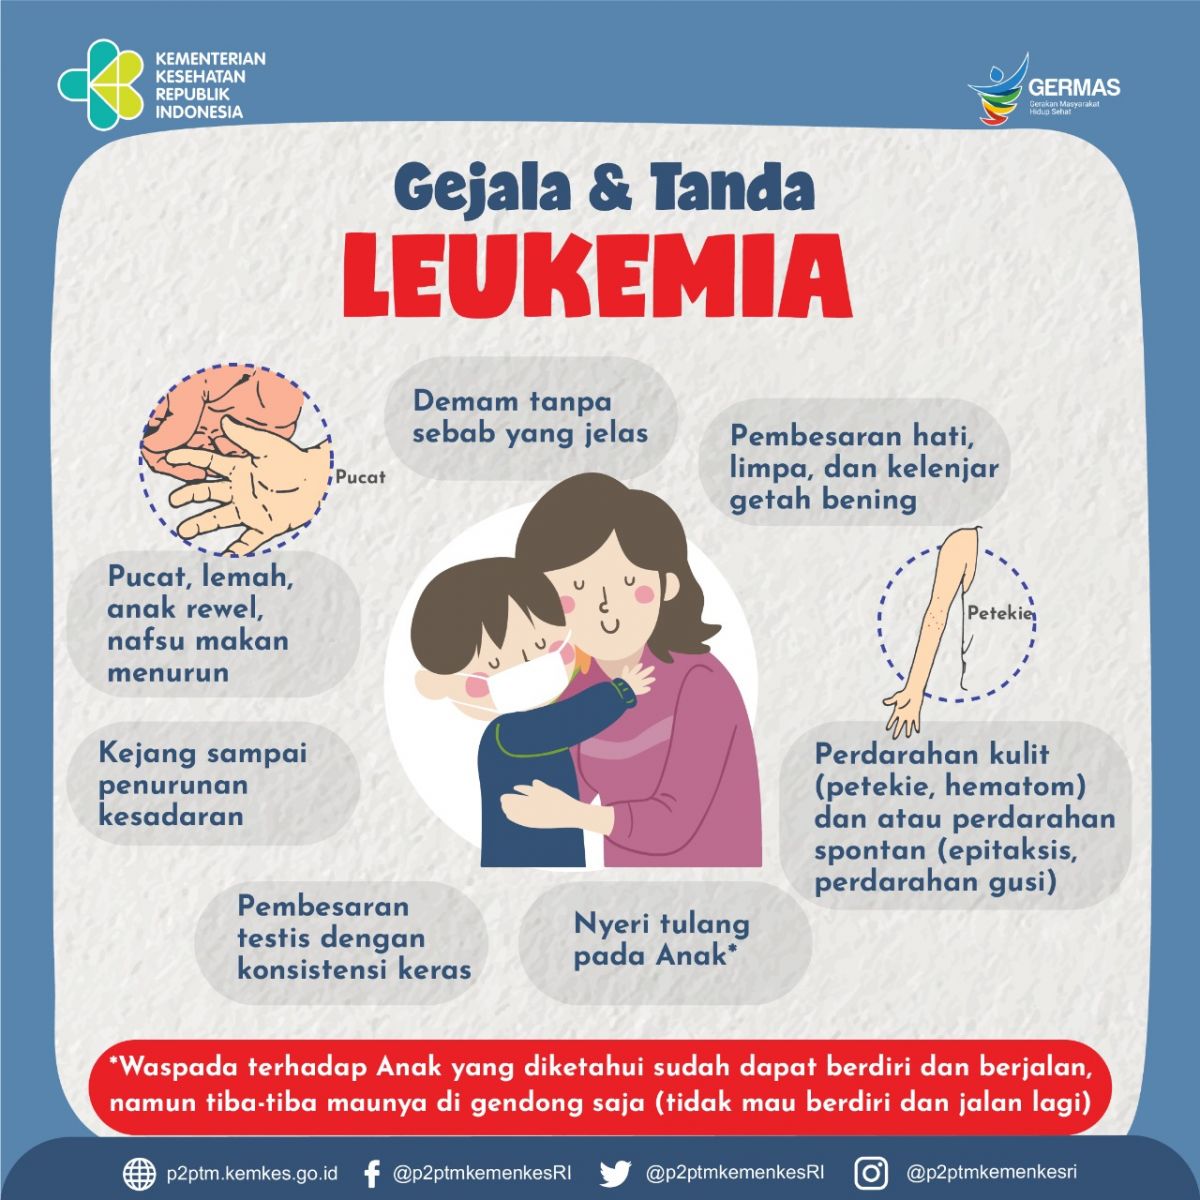 Kenali gejala dan tanda leukemia.